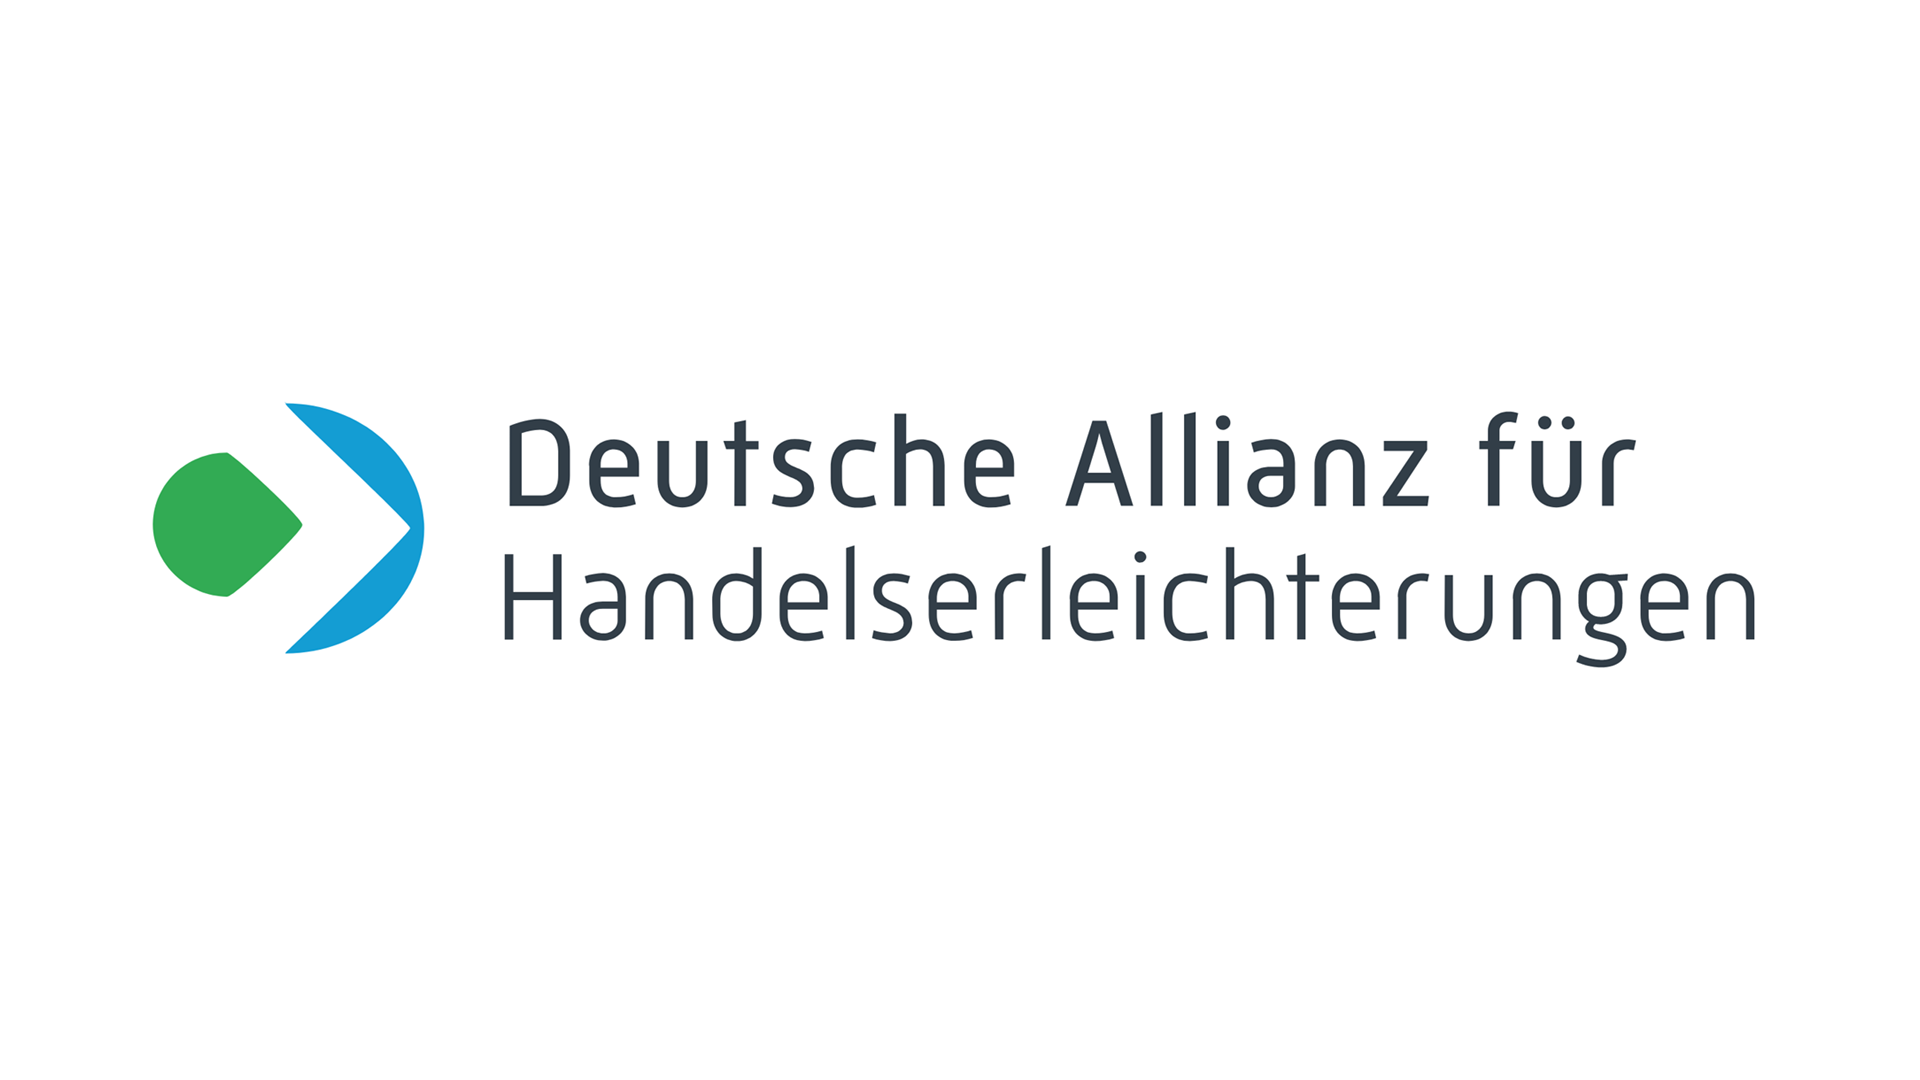 Logo: Deutsche Allianz für Handelserleichterungen